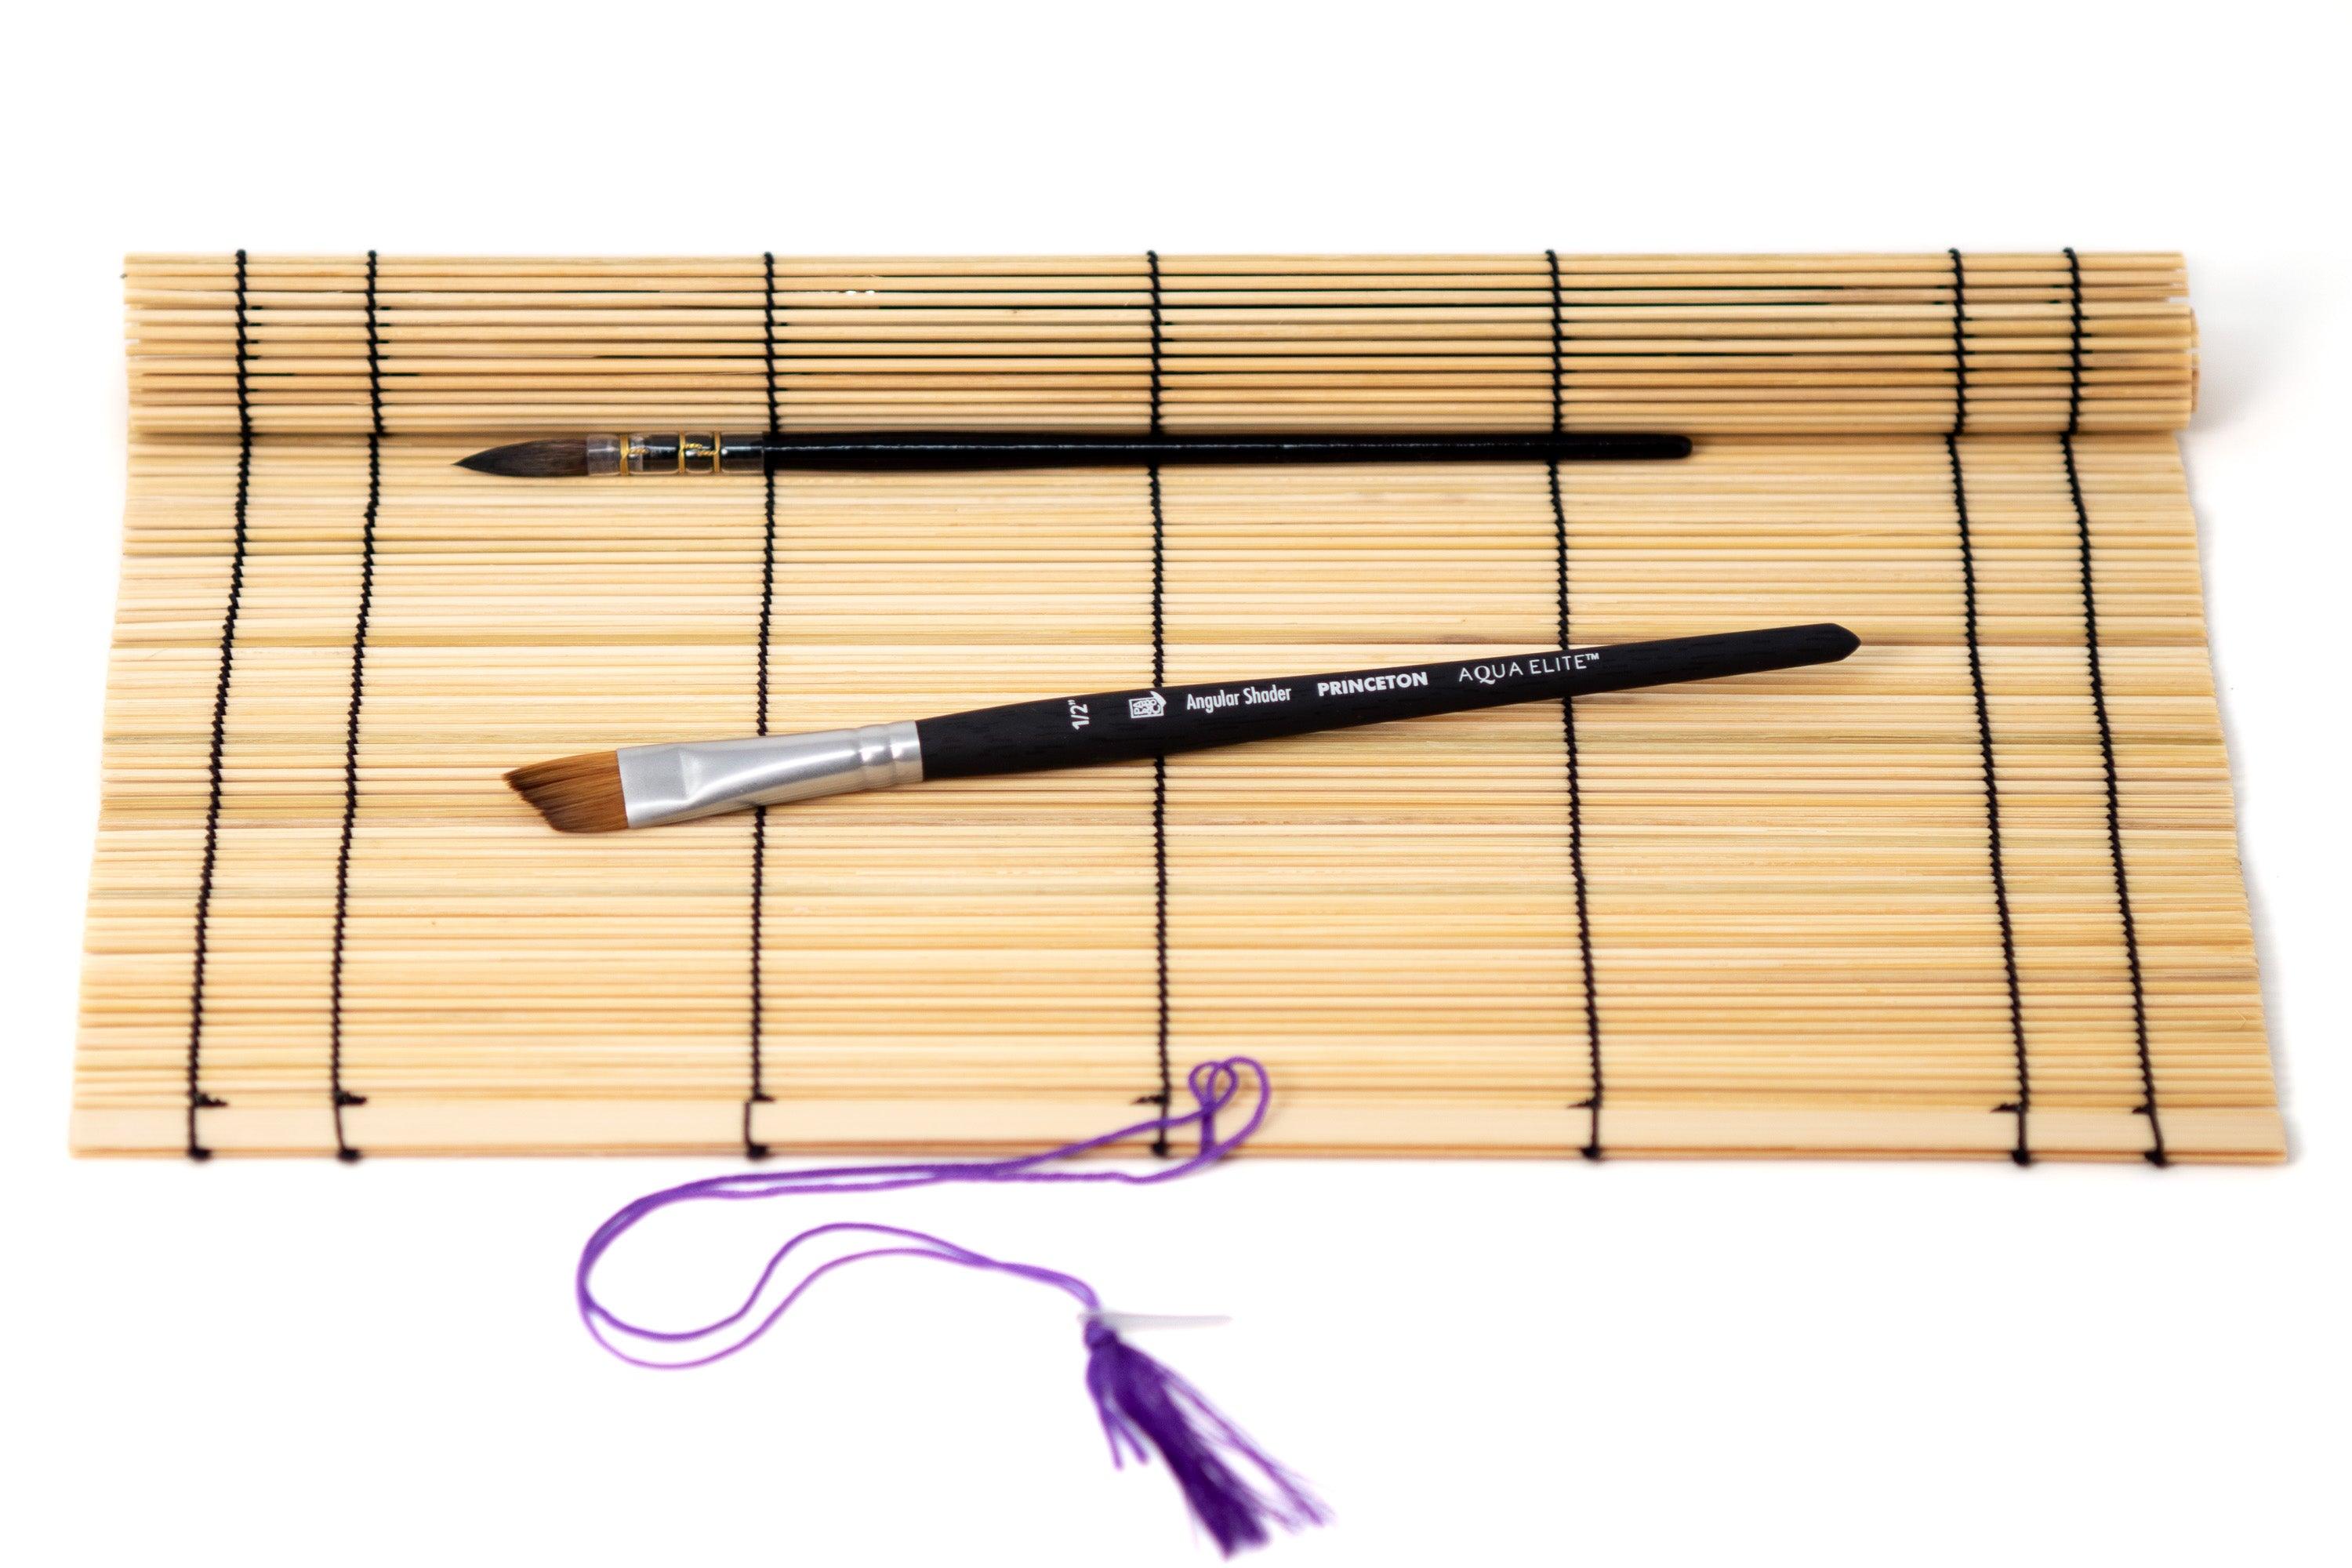  LITAITAI Paint Brush Holder Bamboo,Watercolor Brush